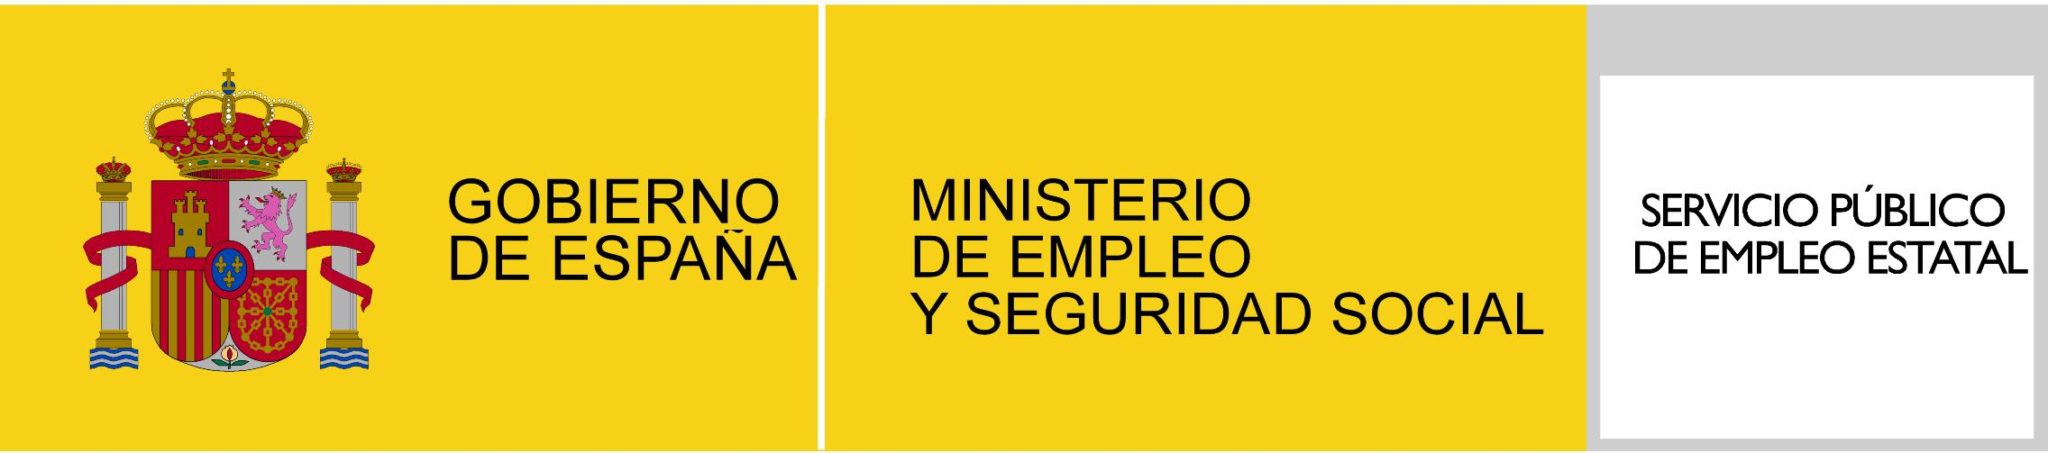 Gobierno de España. Ministerio de Empleo y Seguridad Social. Servicio Público de Empleo Estatal 